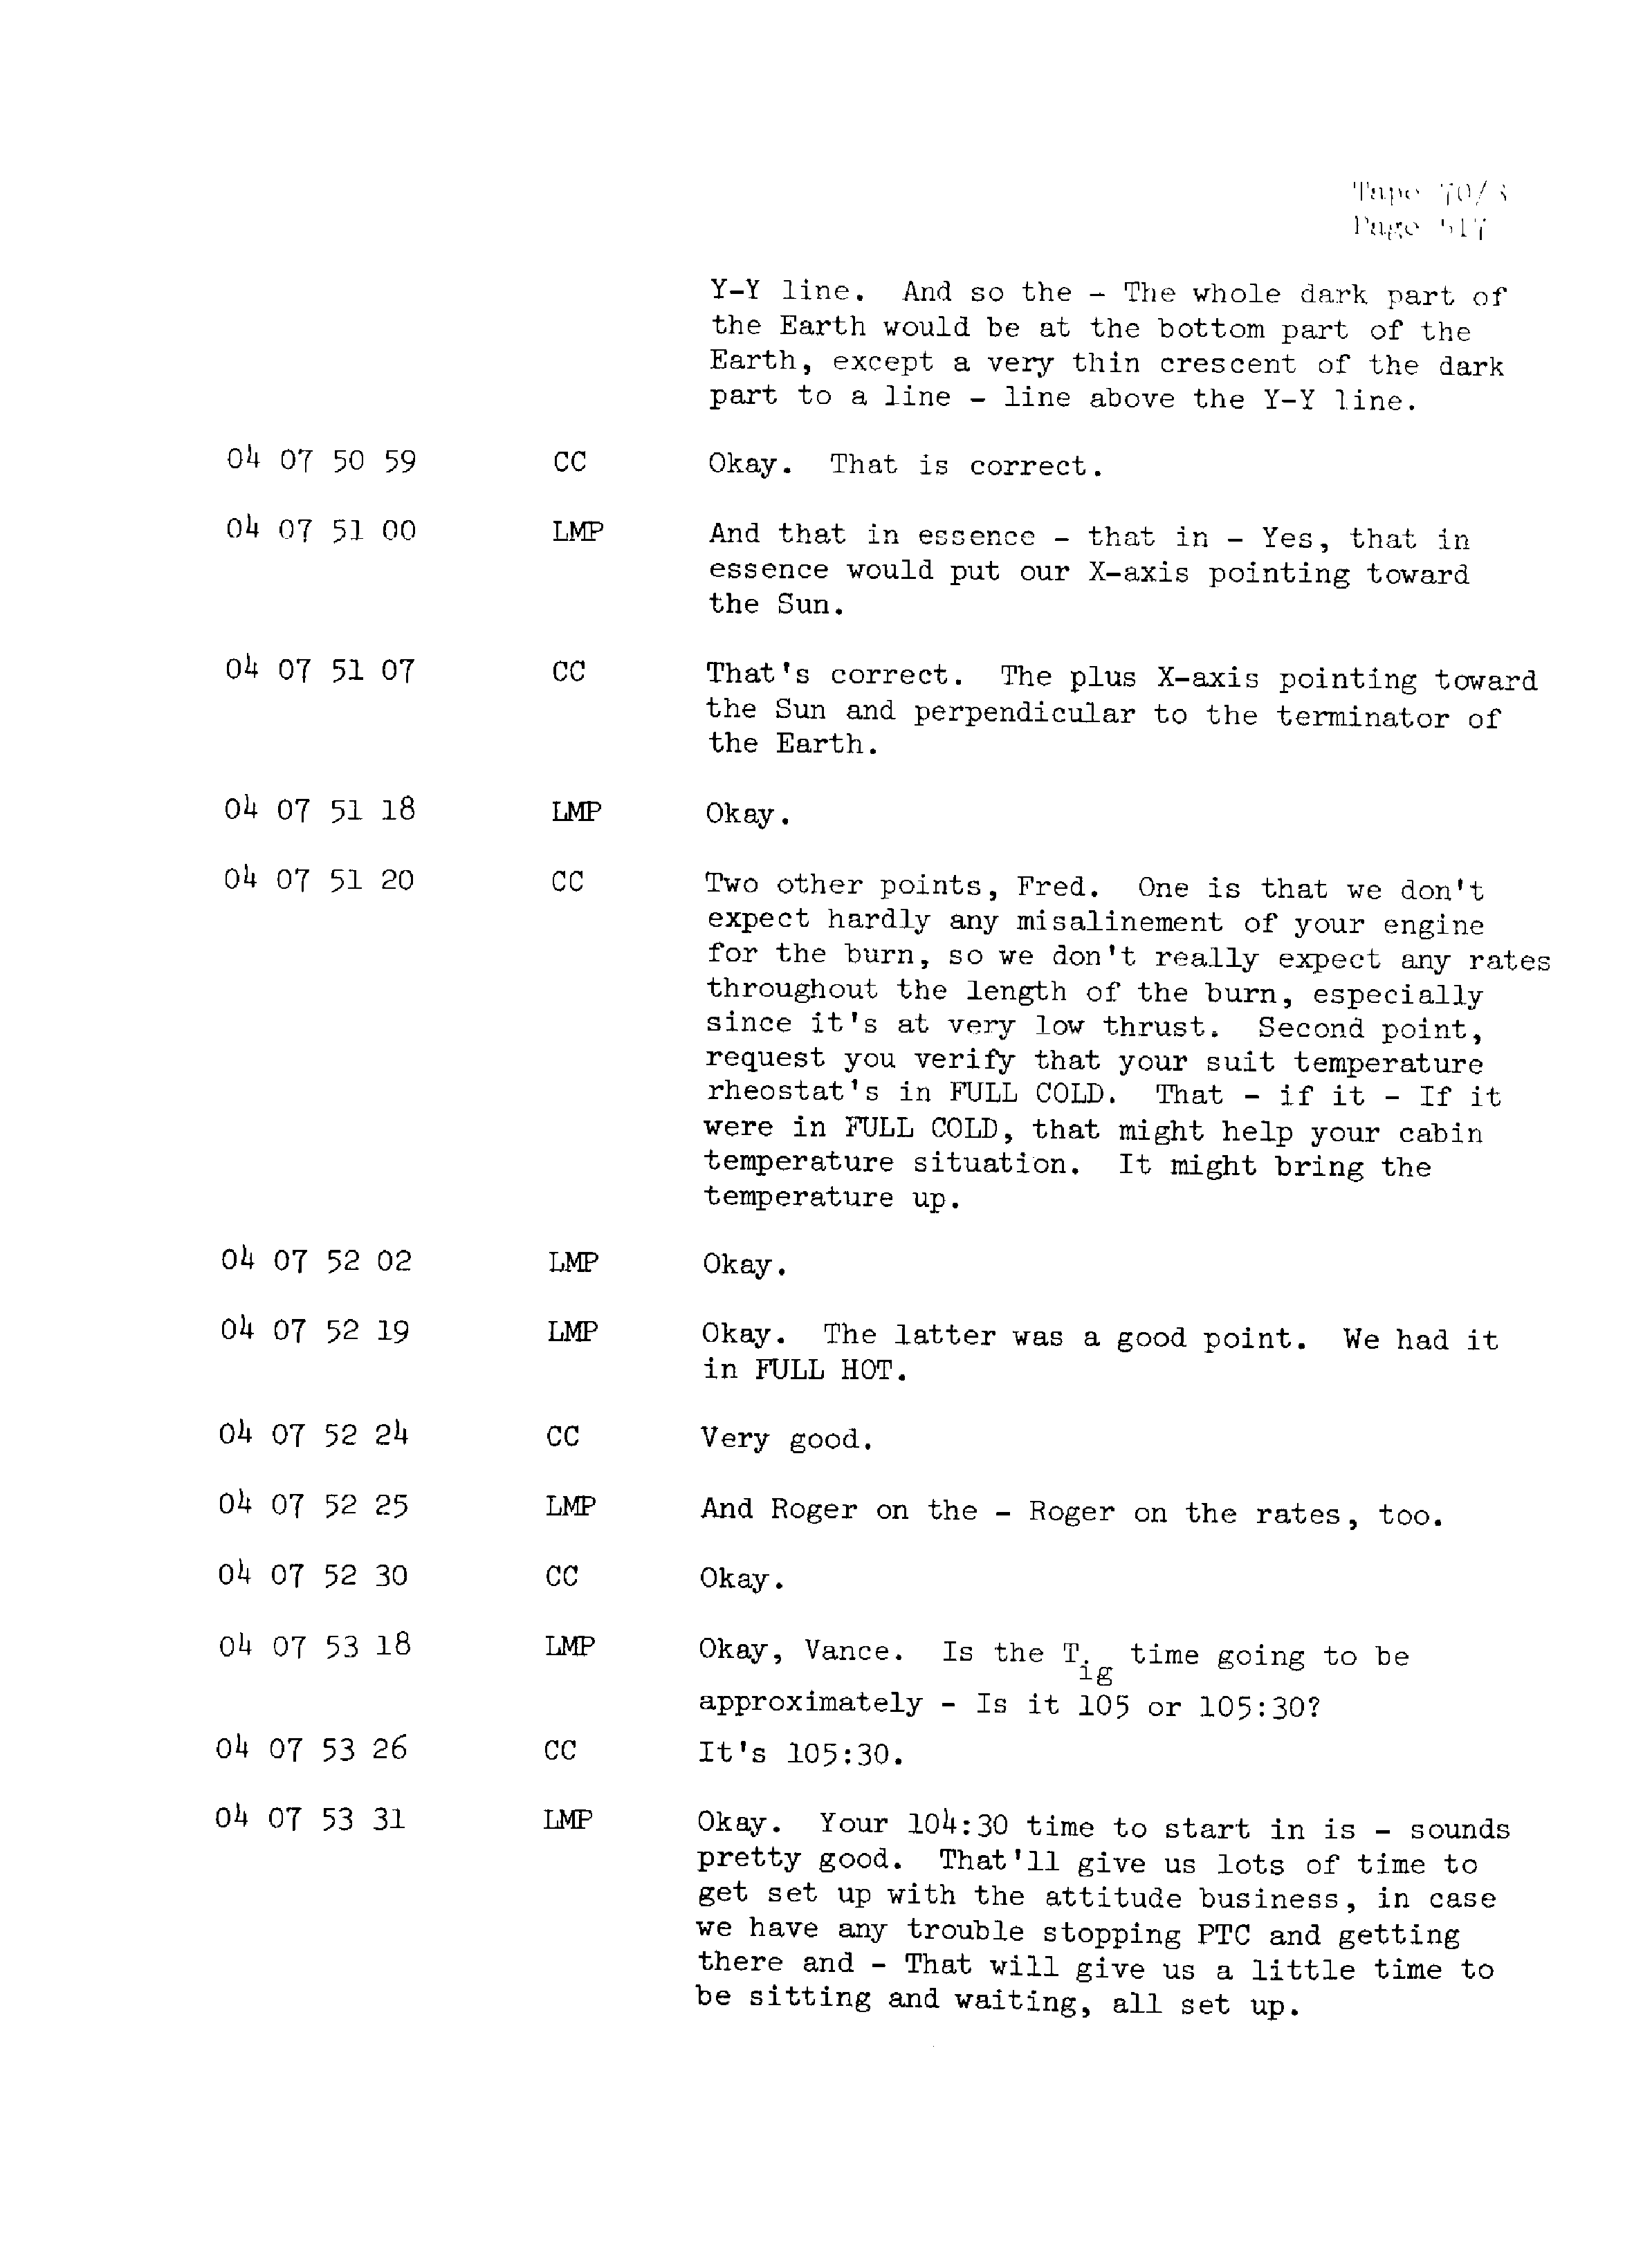 Page 524 of Apollo 13’s original transcript